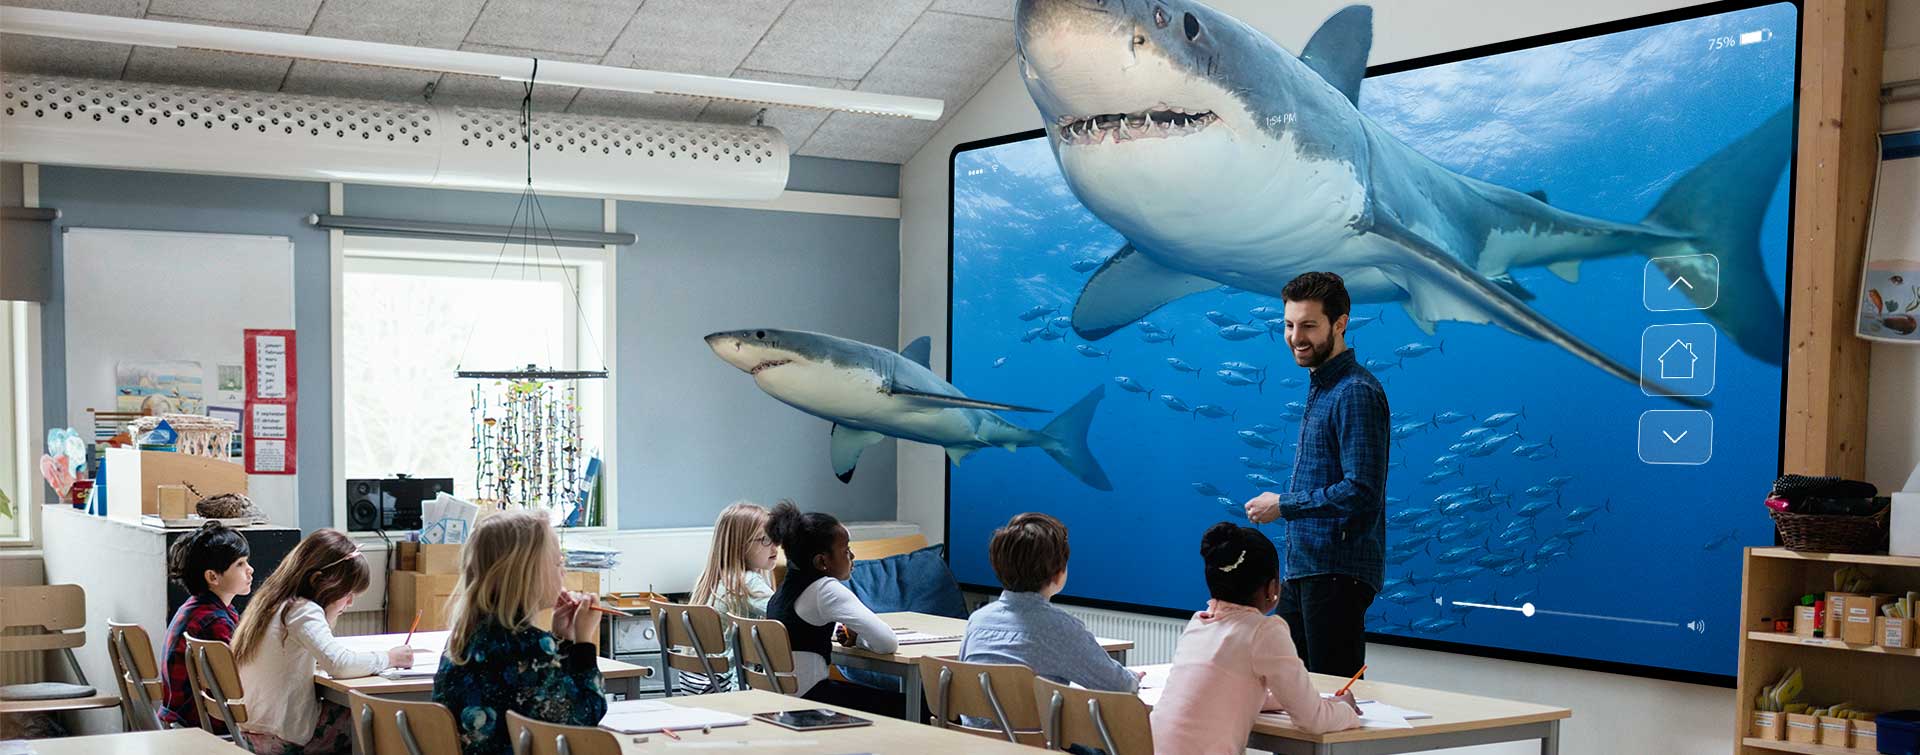 Des requins en classe avec des élèves et leur enseignant